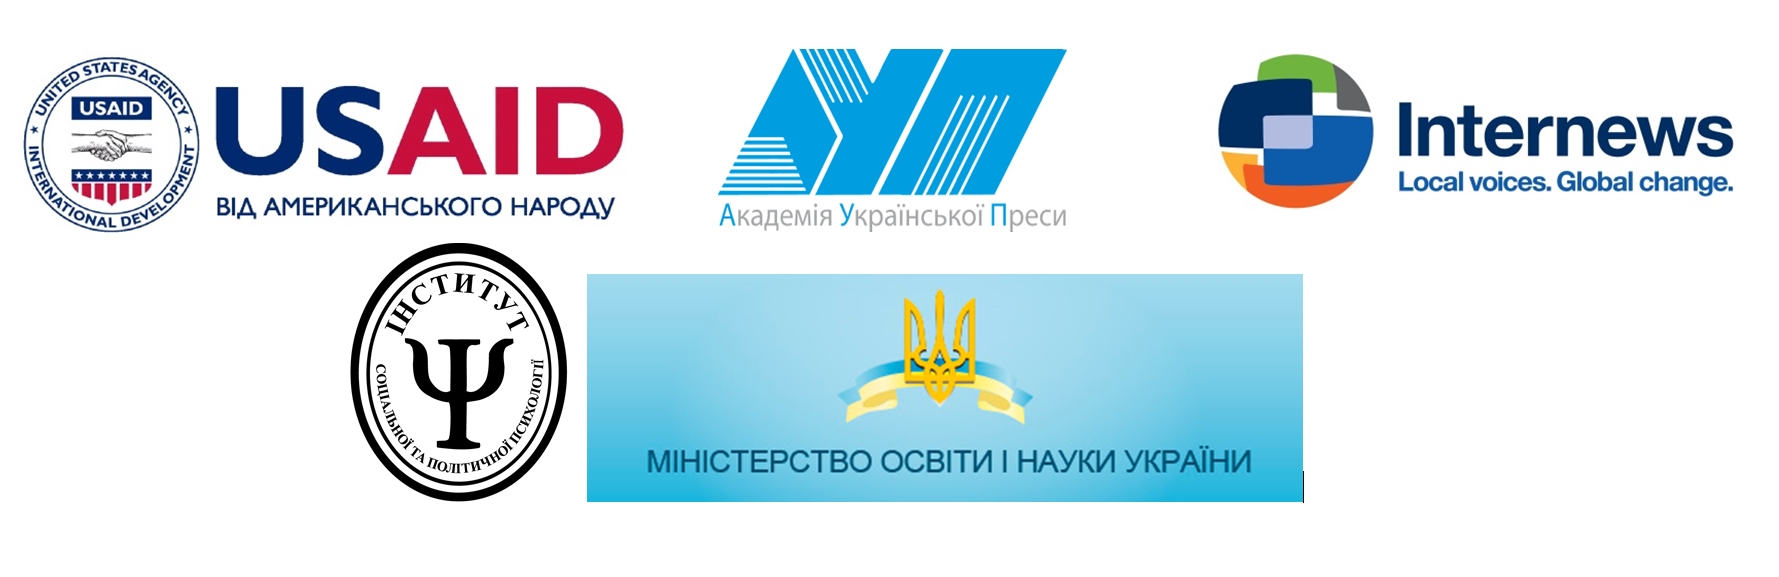 У Києві відбудеться четверта міжнародна конференція з медіаграмотності